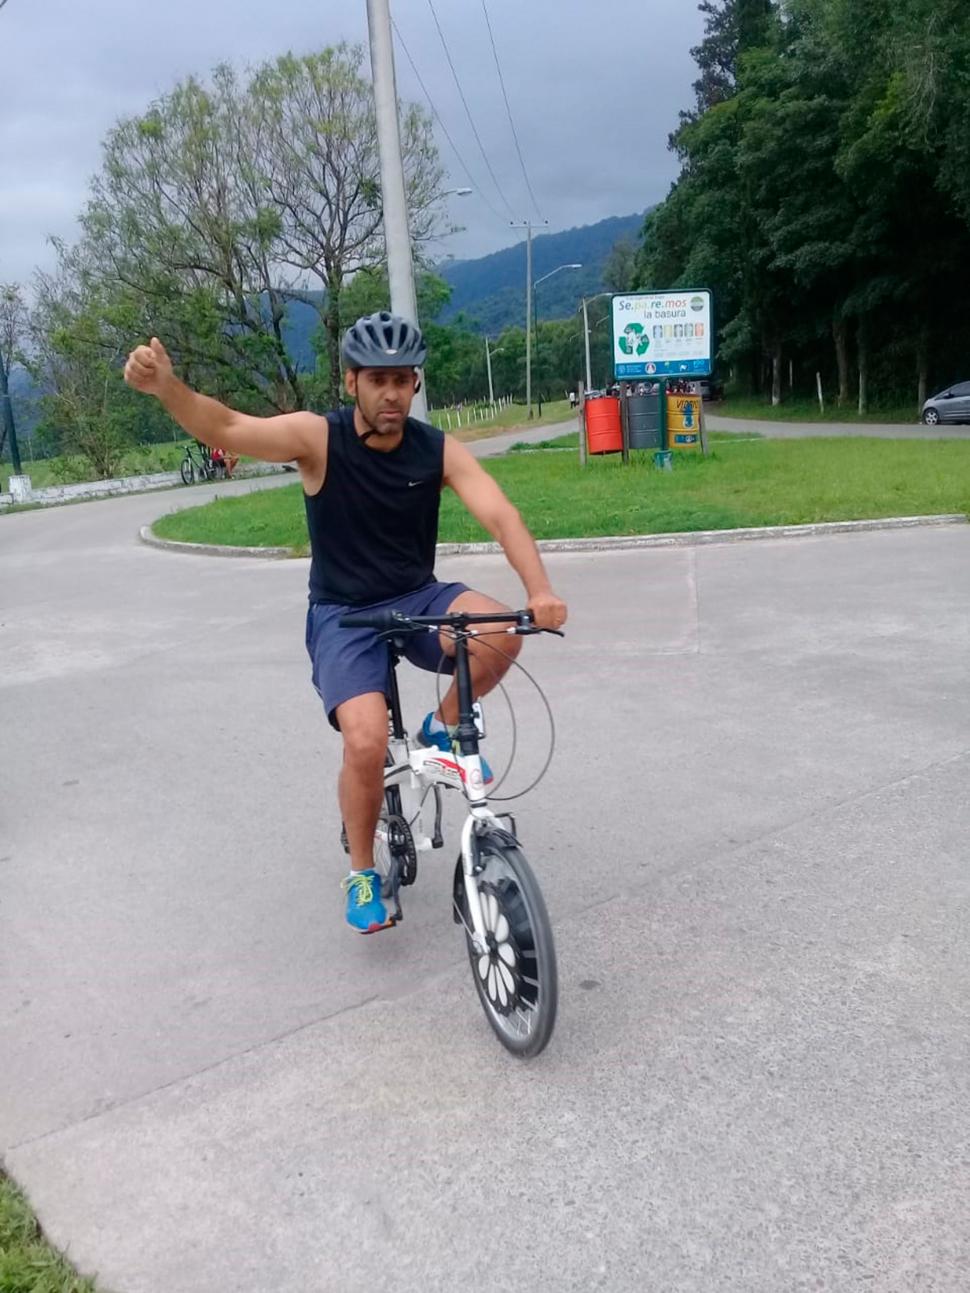 LIBERTAD. Javier Robles siente que puede llegar a todos lados con su bici.